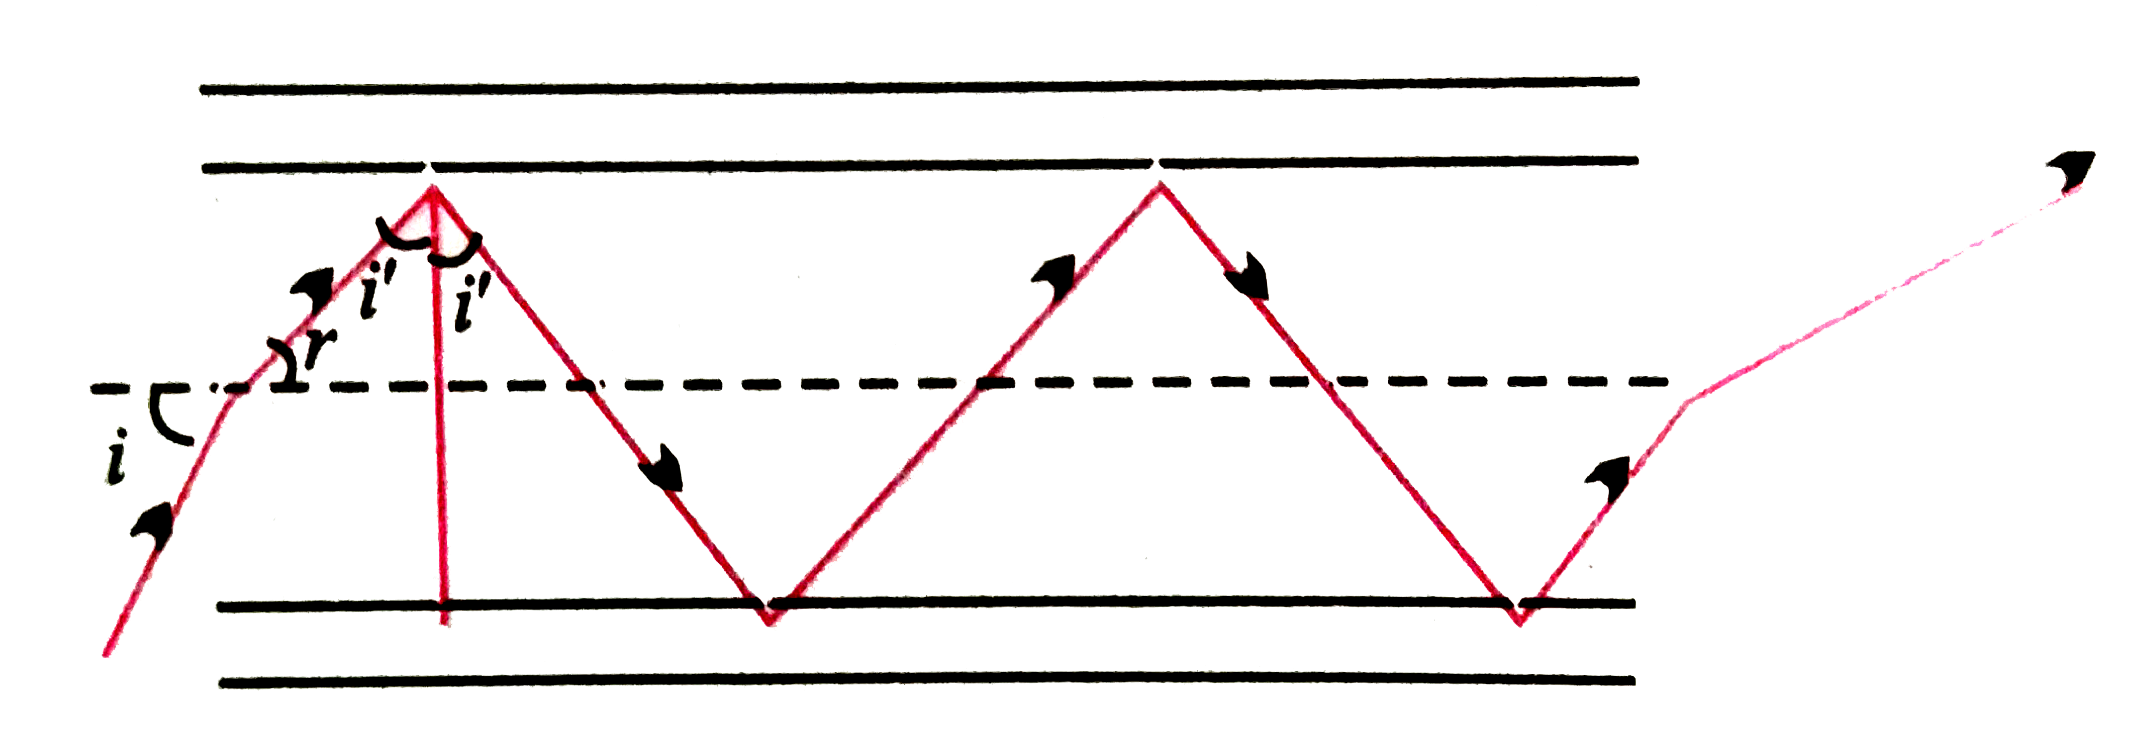 चित्र में अपवर्तनांक 1.68 के तन्तु काँच से बनी किसी प्रकाश नलिका (लाइट पाइप) का अनुप्रस्थ परिच्छेद दर्शाया गया है। नलिका का बाह्य आवरण 1.44 अपवर्तनांक के पदार्थ का बना है। नलिका के अक्ष से आपतित किरणों के कोणों का परिसर, जिनके लिए चित्र में दर्शाए अनुसार नलिका के भीतर पूर्ण परावर्तन होते हैं, ज्ञात कीजिए।   (b) यदि पाइप पर बाह्य आवरण न हो तो क्या उत्तर होगा ?